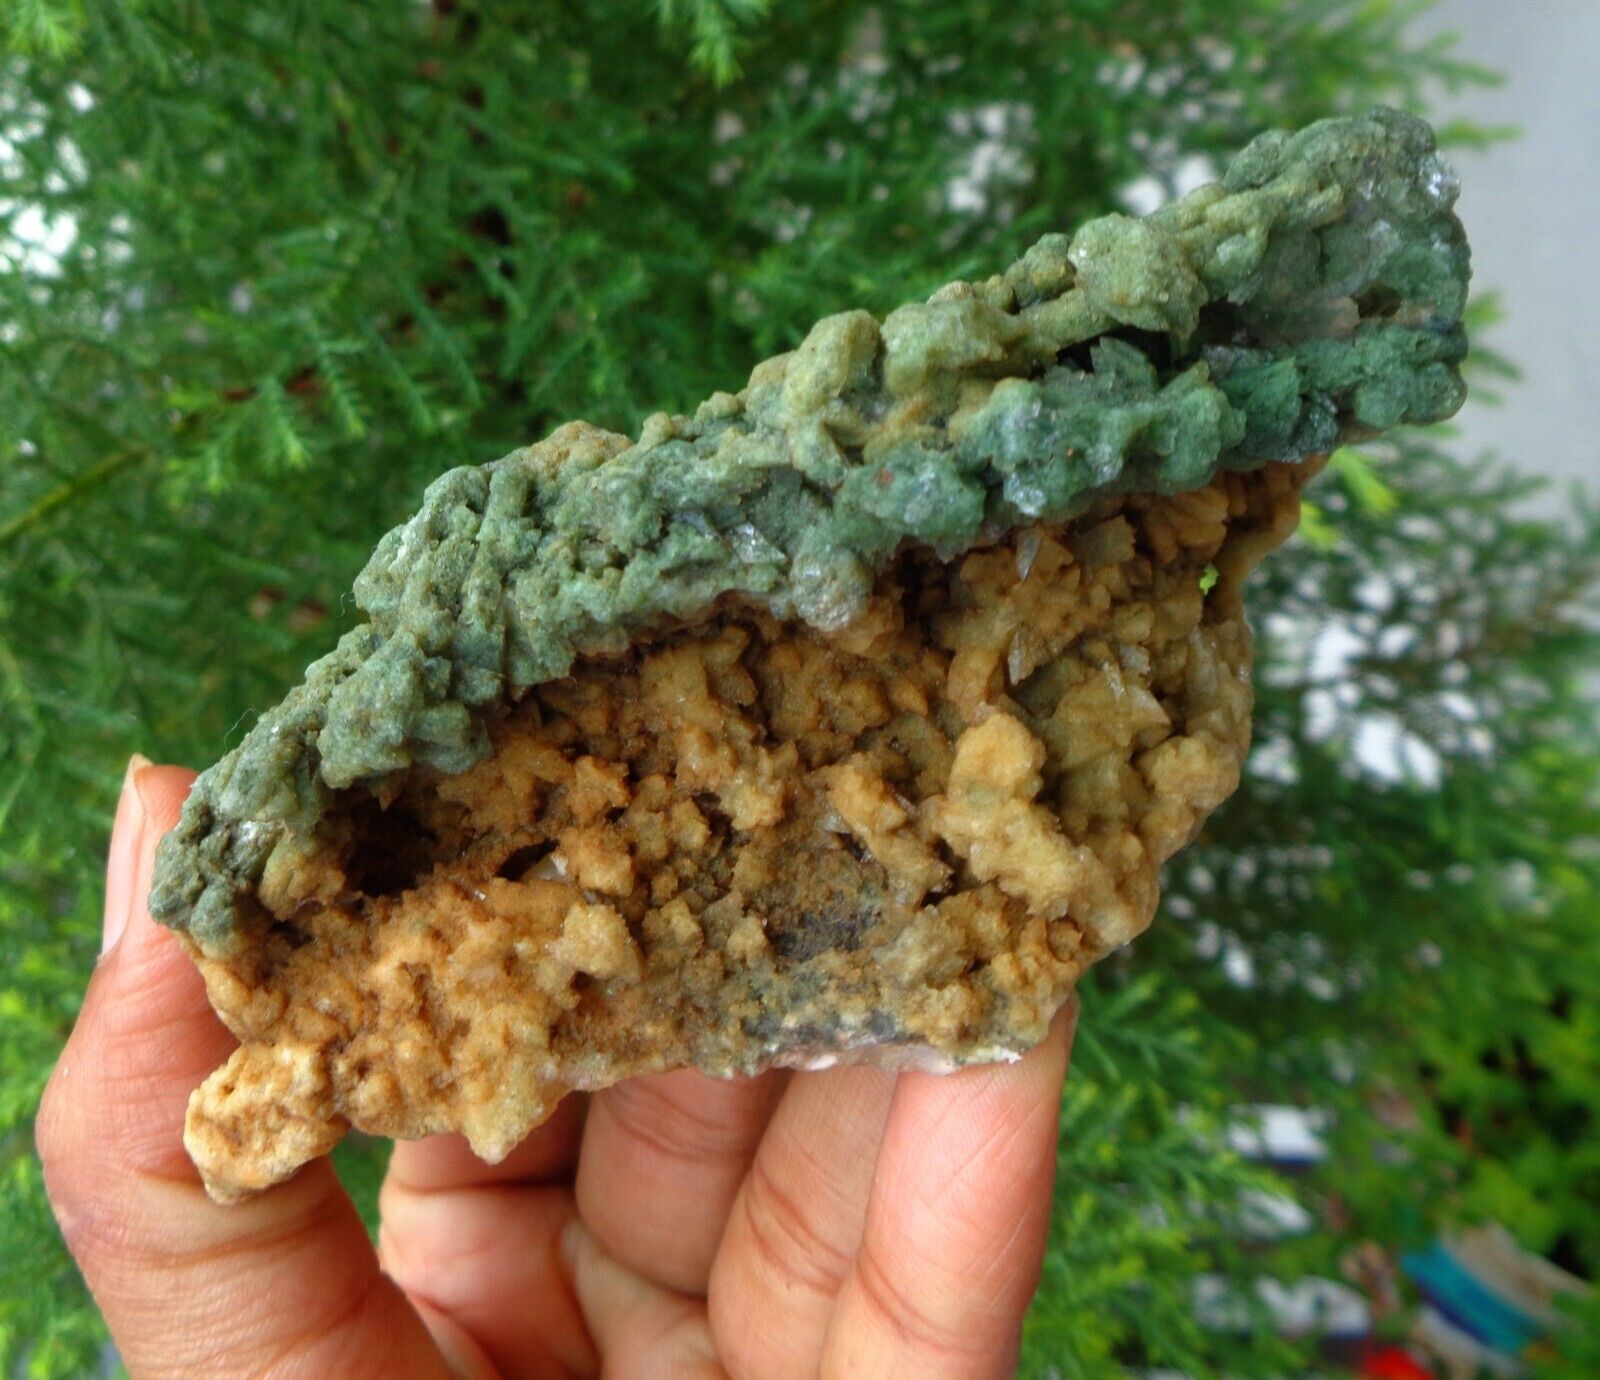 Marshy Green Heulandite Minerals Specimen#F12